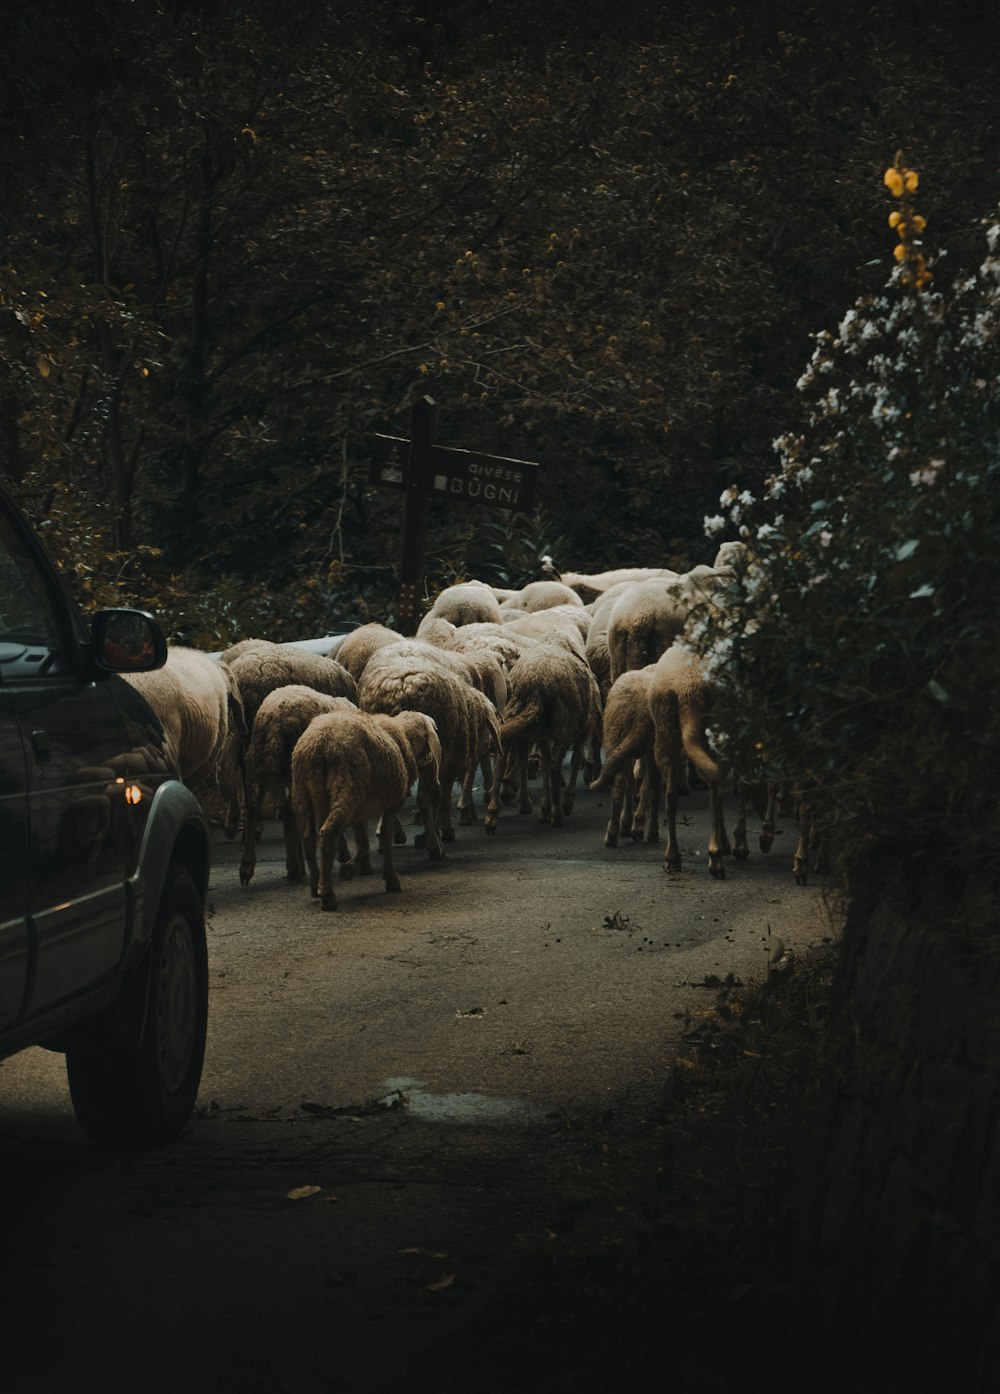 coche delante de los animales